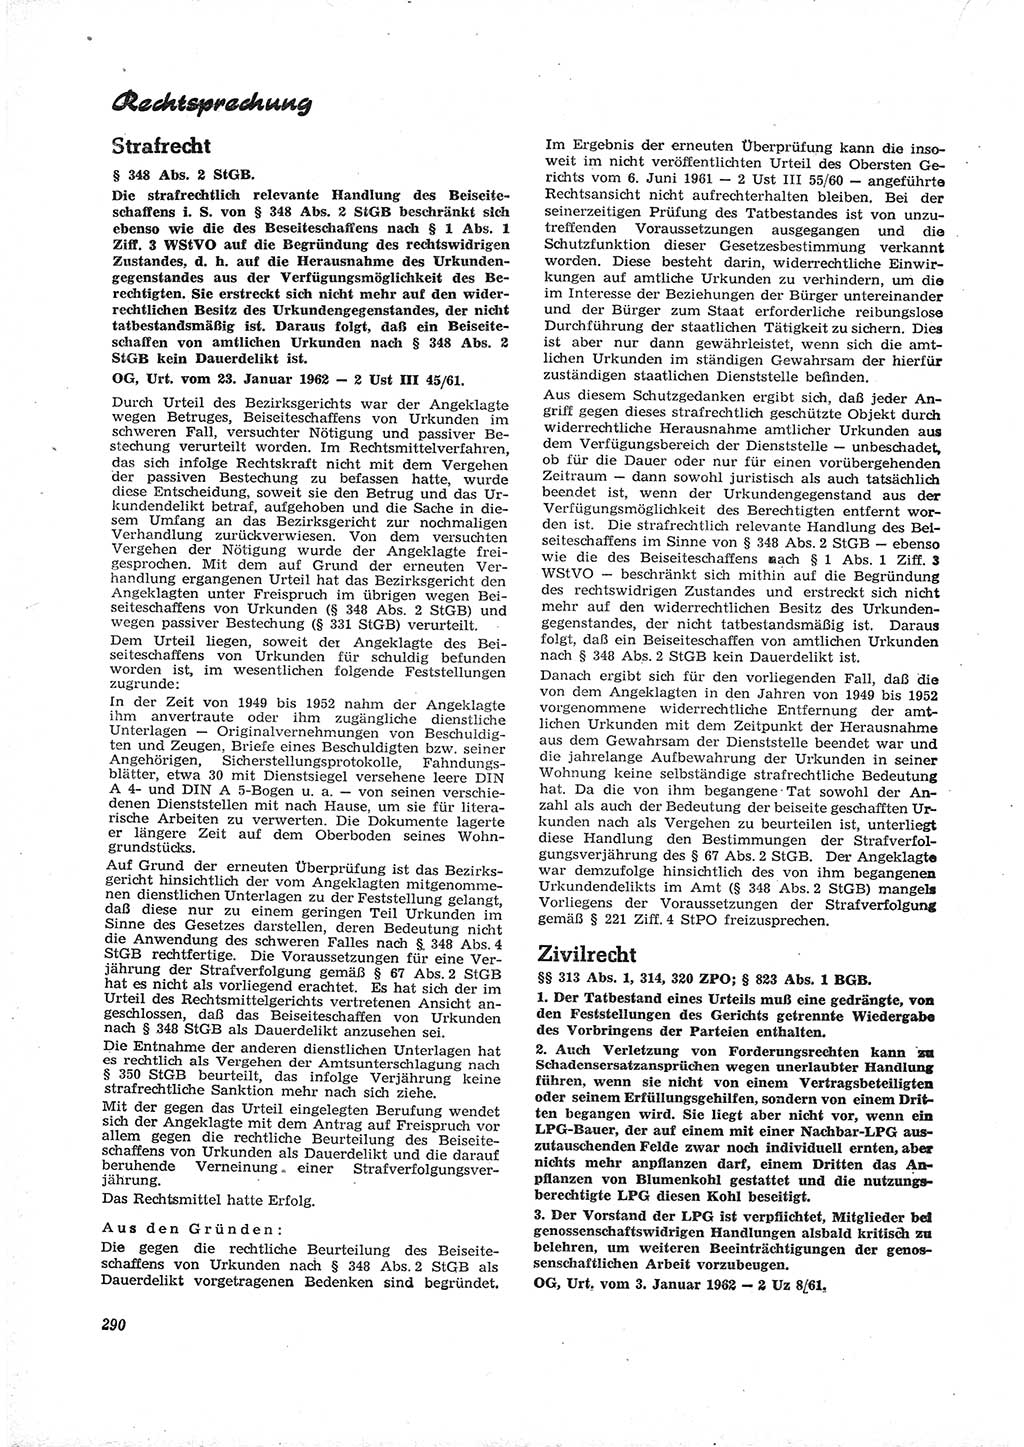 Neue Justiz (NJ), Zeitschrift für Recht und Rechtswissenschaft [Deutsche Demokratische Republik (DDR)], 16. Jahrgang 1962, Seite 290 (NJ DDR 1962, S. 290)